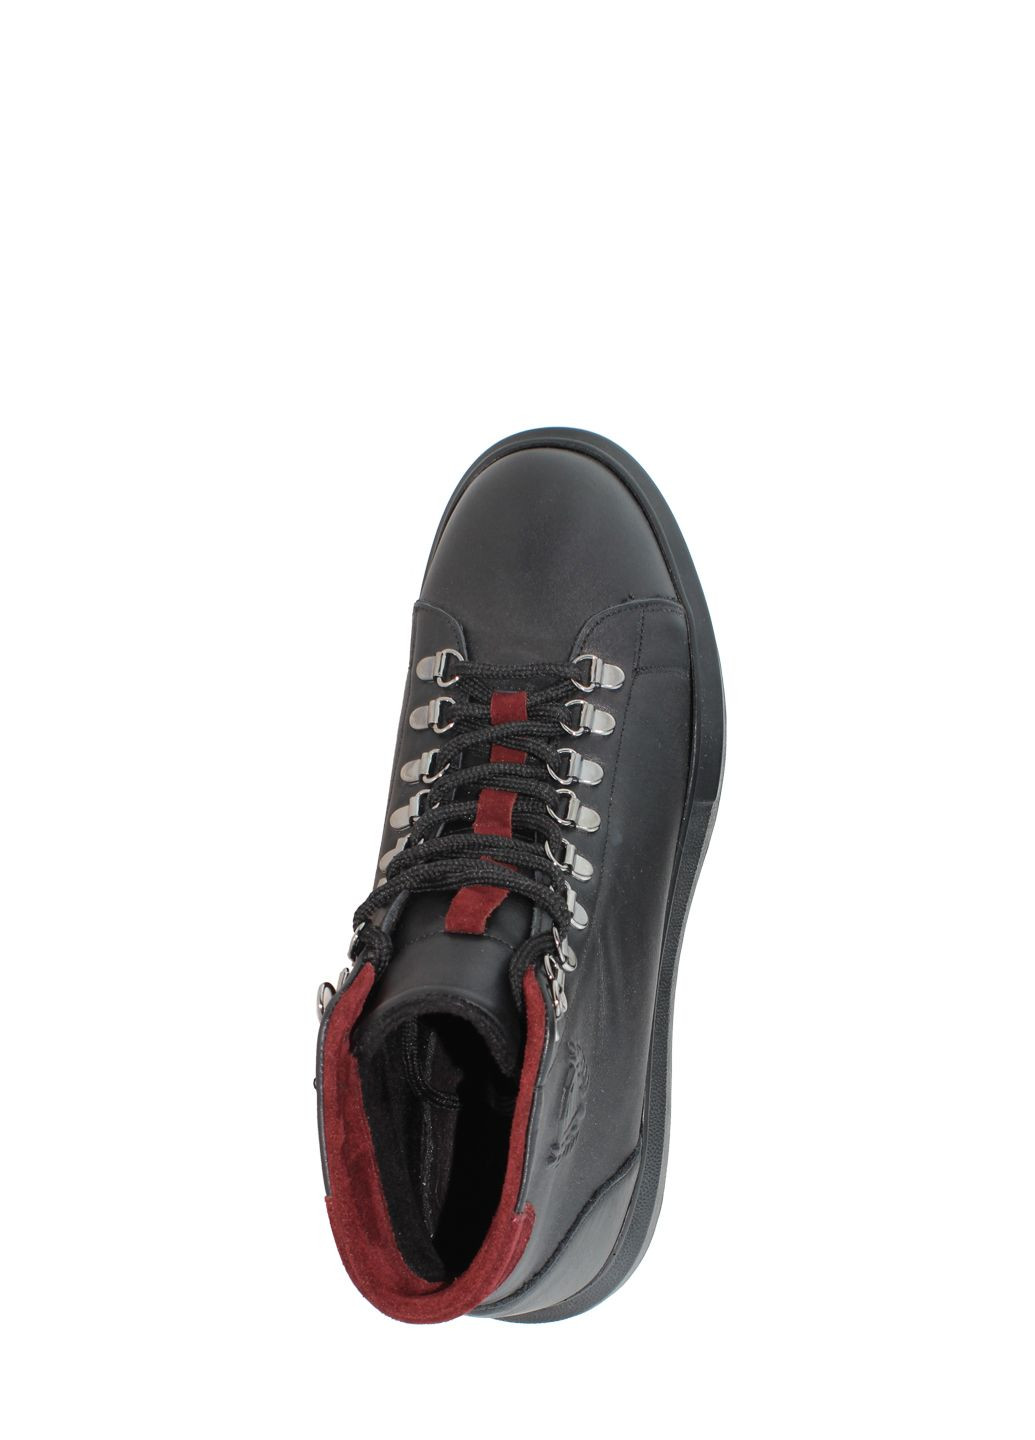 Черные осенние ботинки g6162.01 черный Goover